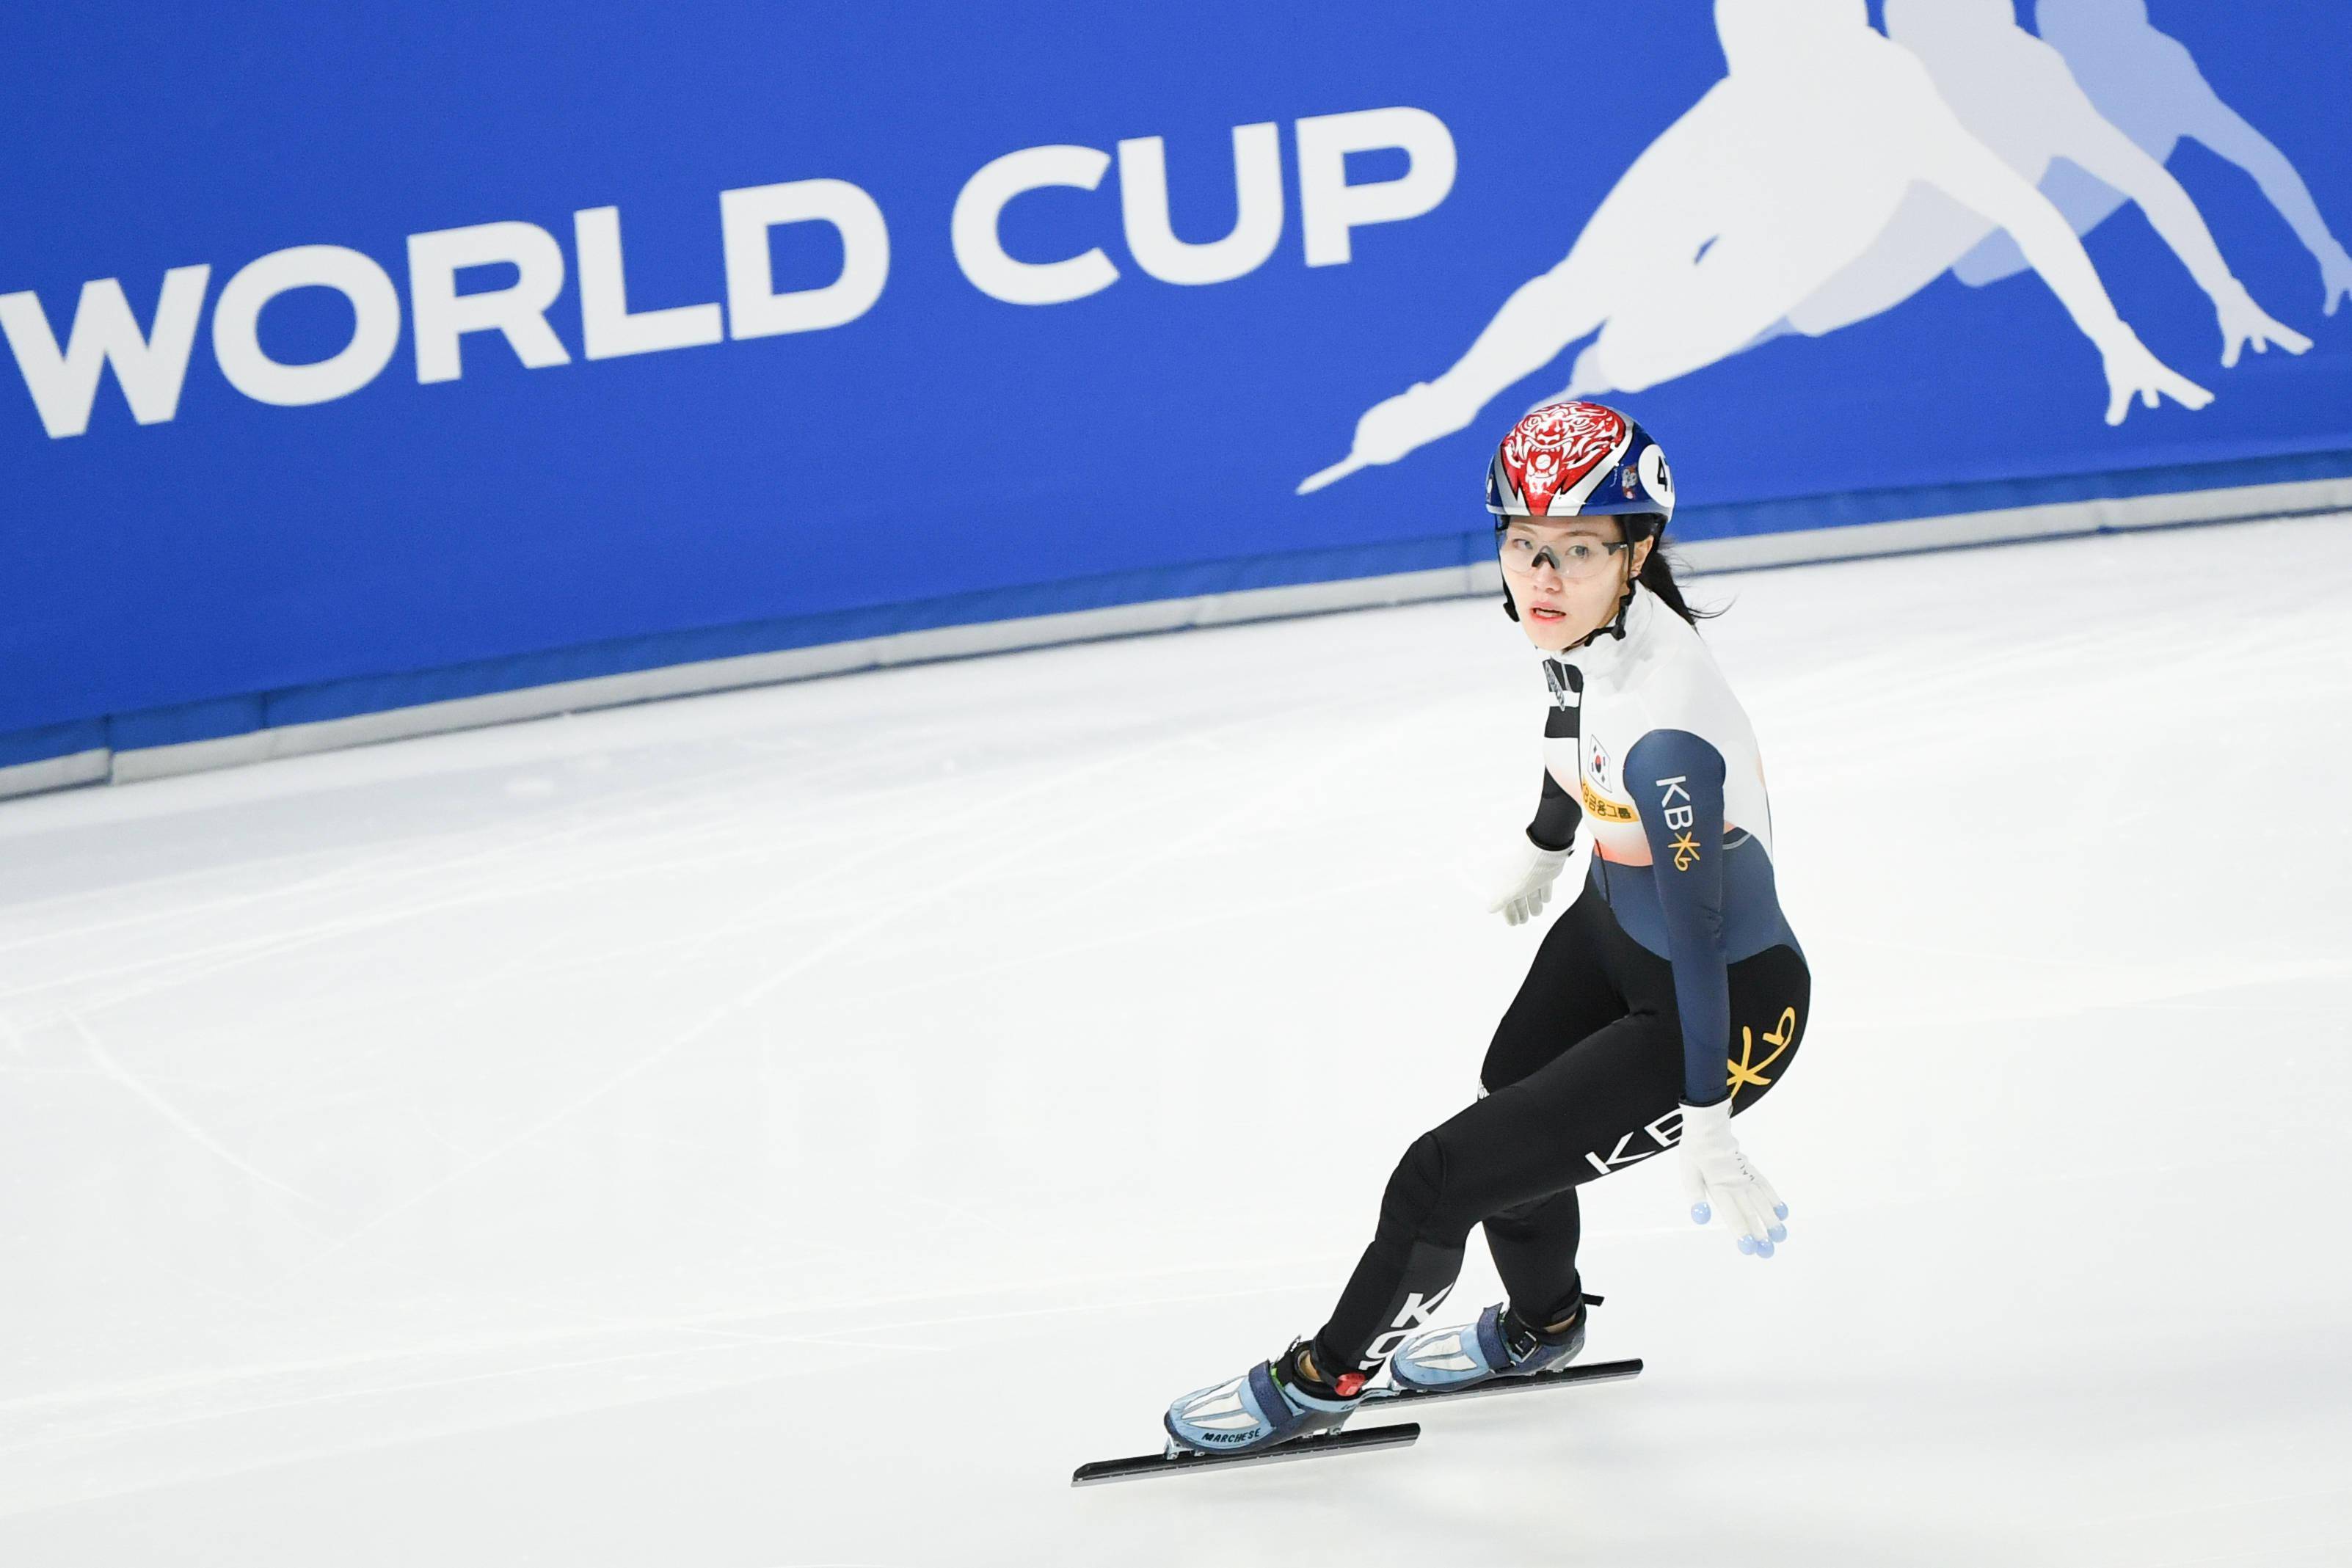 韩国短道速滑女选手李图片